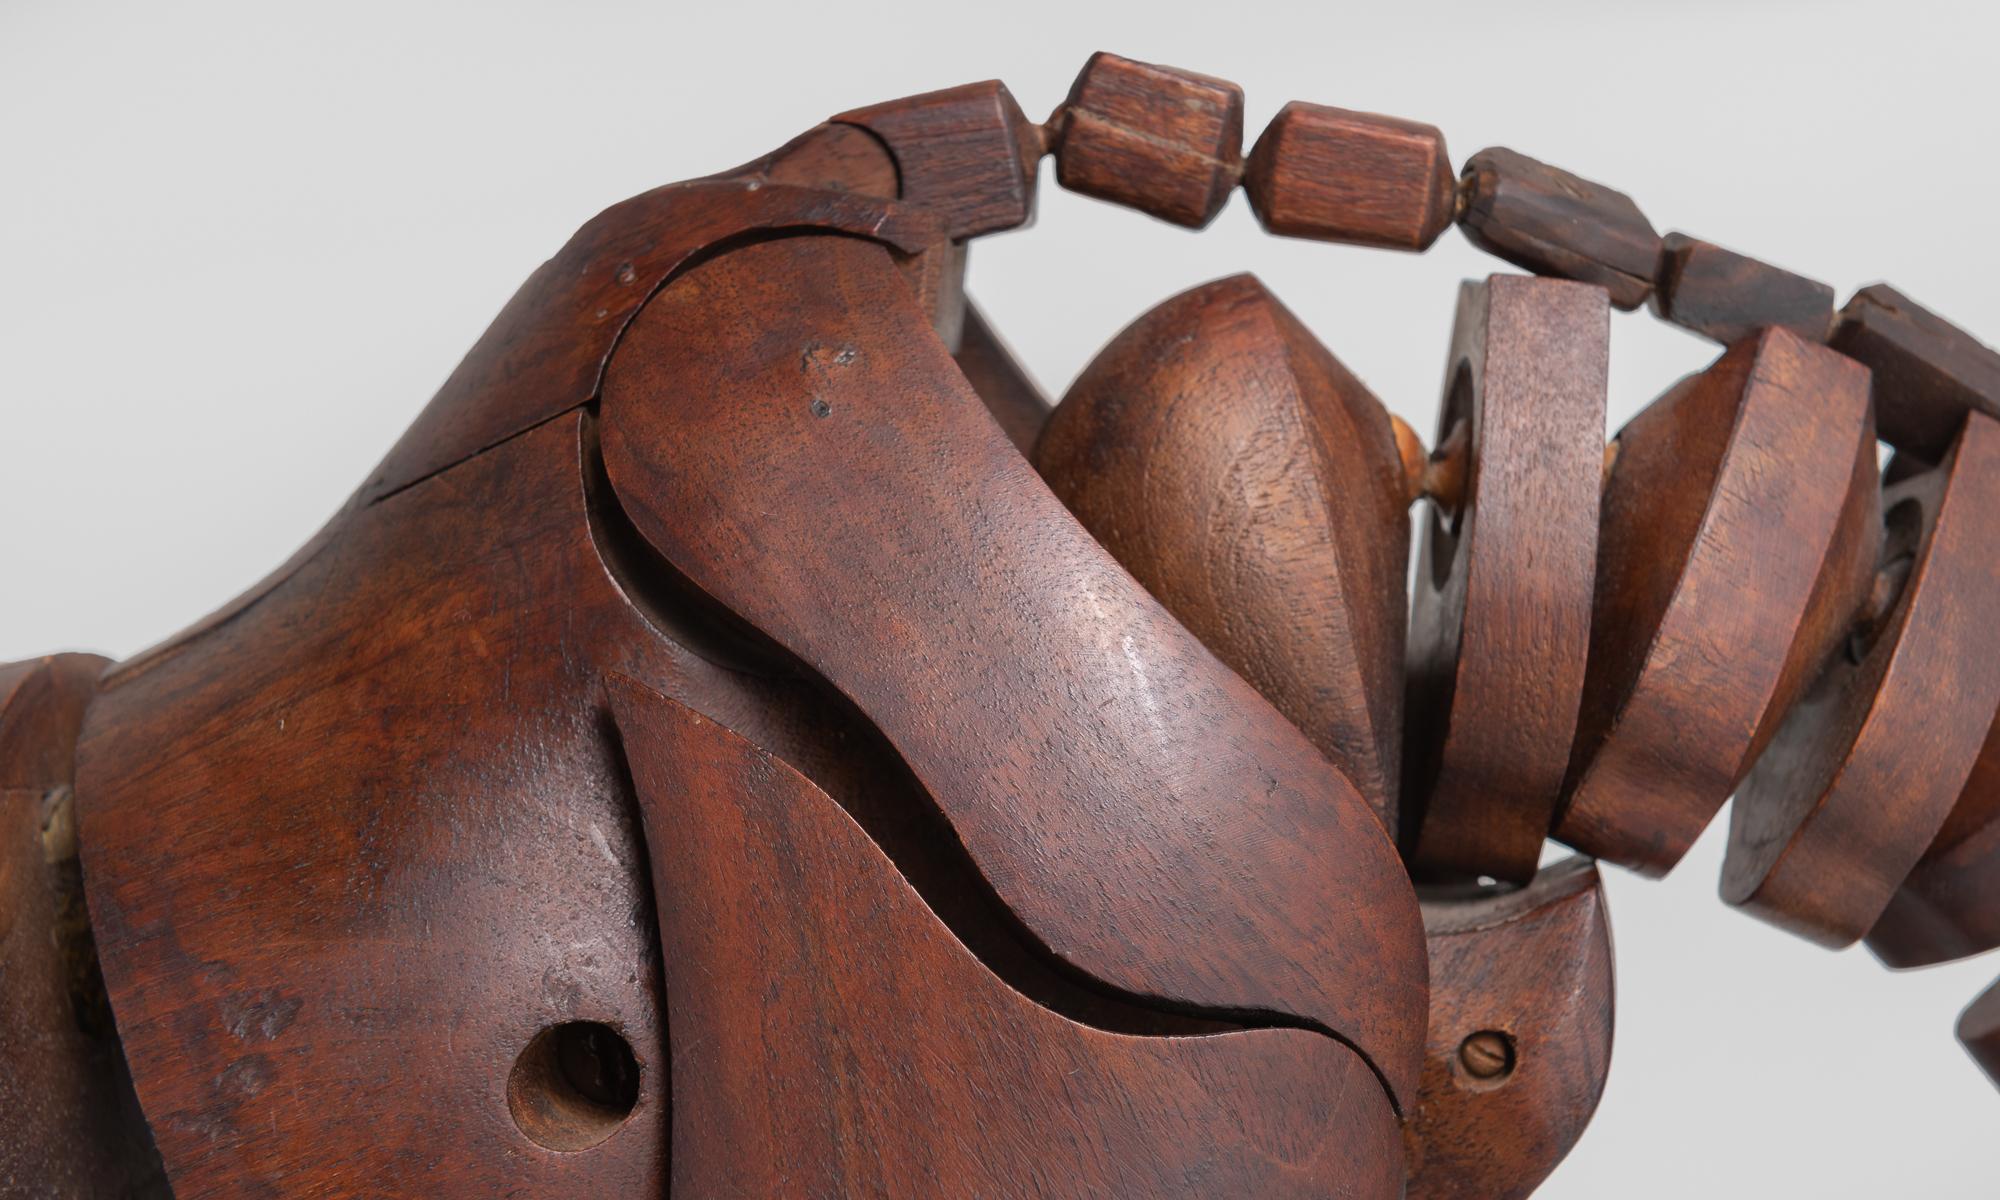 Künstlermodell eines gelenkigen Holzpferdes von C. Barbe, England, um 1830.

Geschnitzter Holzkörper, Kopf aus Pappmaché, Innenbeschläge aus Messing auf Eisen- und Holzdisplay. Der Sockel ist gestempelt 